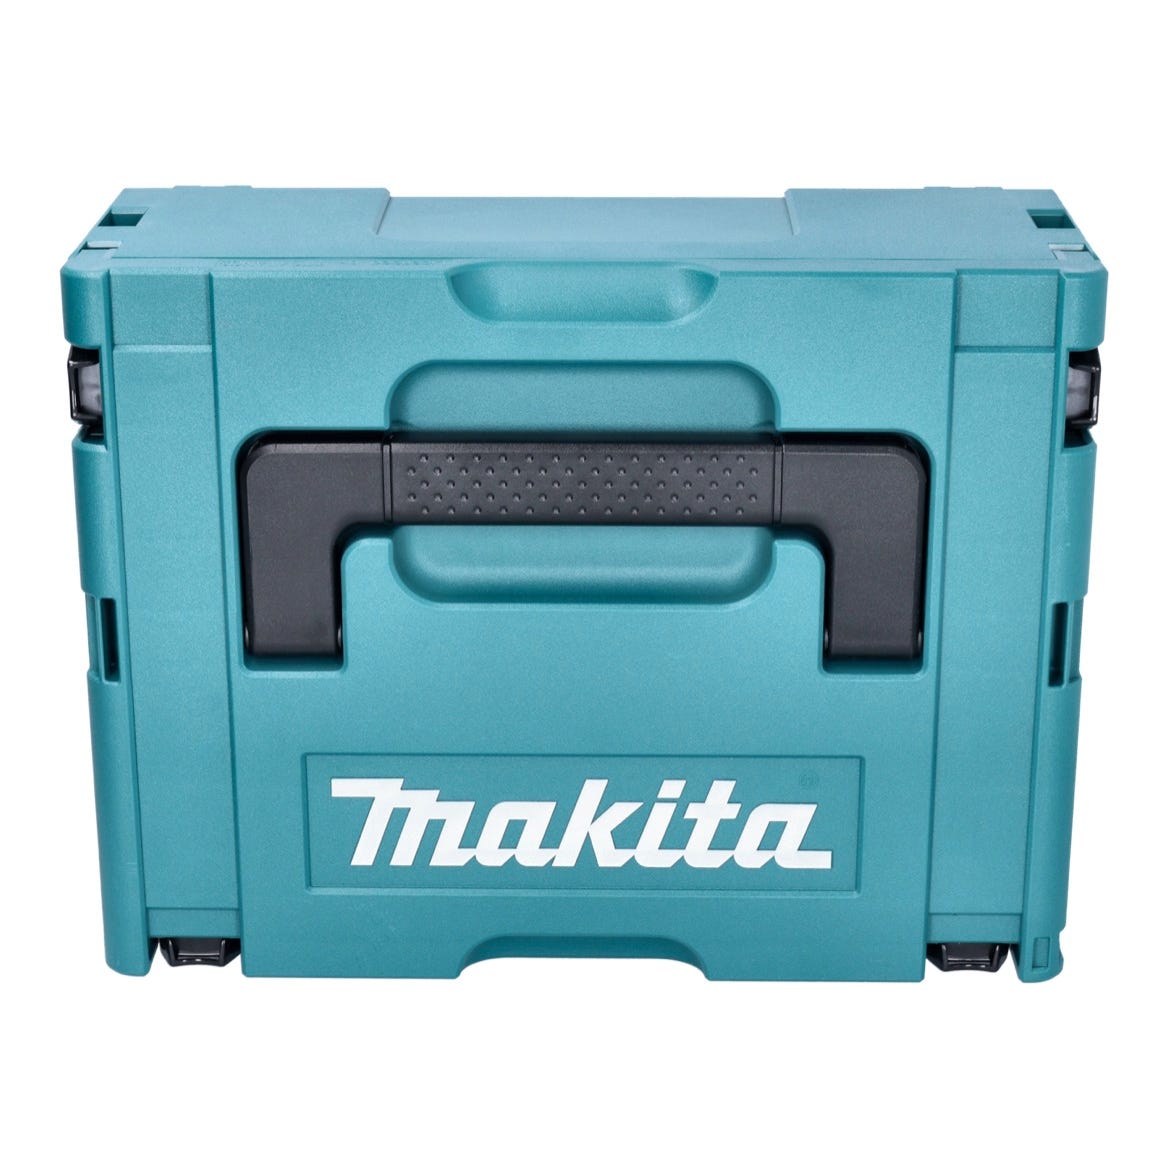 Makita DTD 157 RG1J Clé à choc sans fil 18 V 140 Nm 1/4'' Brushless + 1x batterie 6,0 Ah + chargeur + Makpac 2